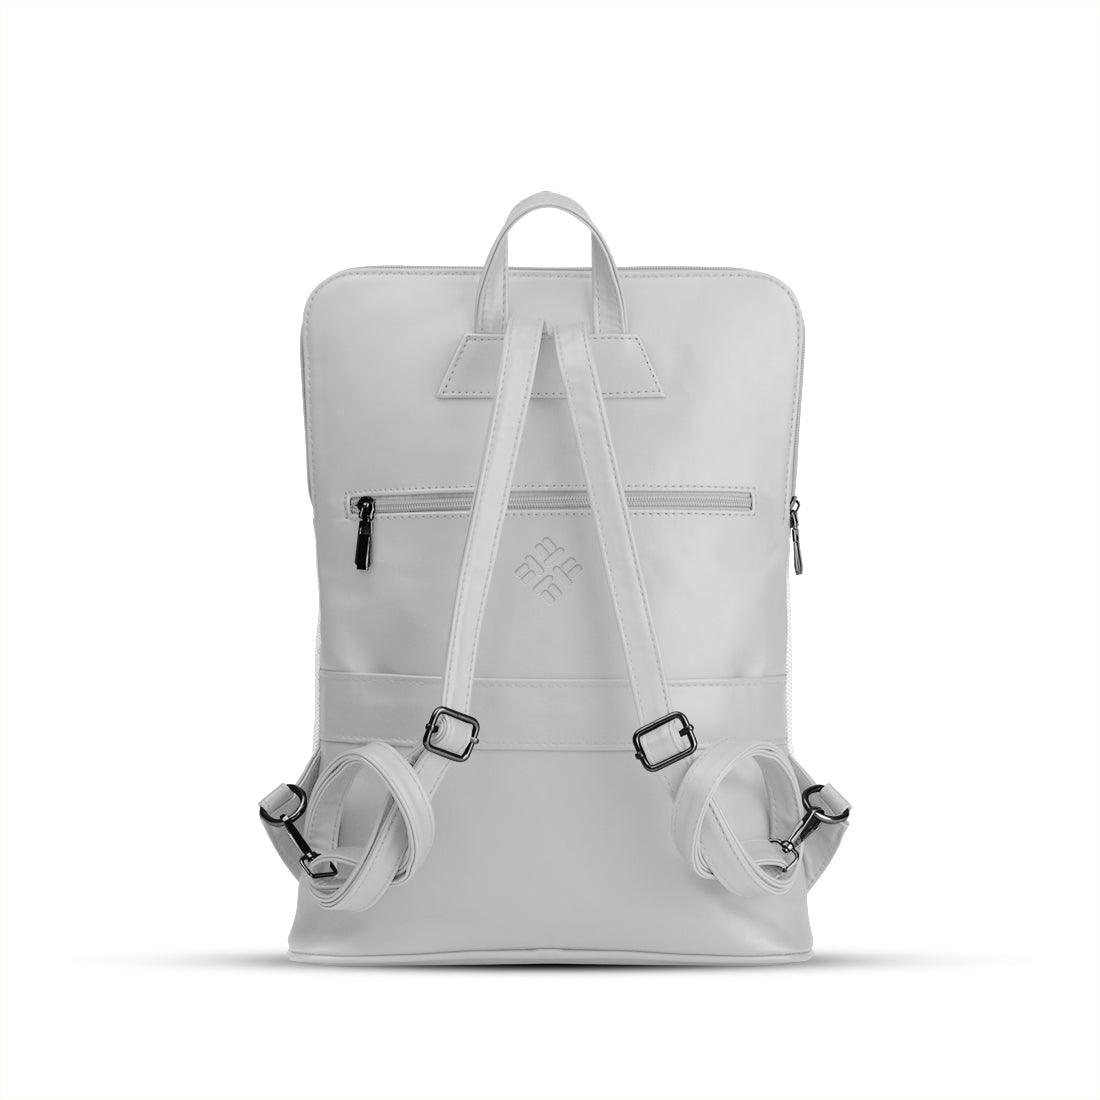 White Orbit Laptop Backpack Owl - CANVAEGYPT